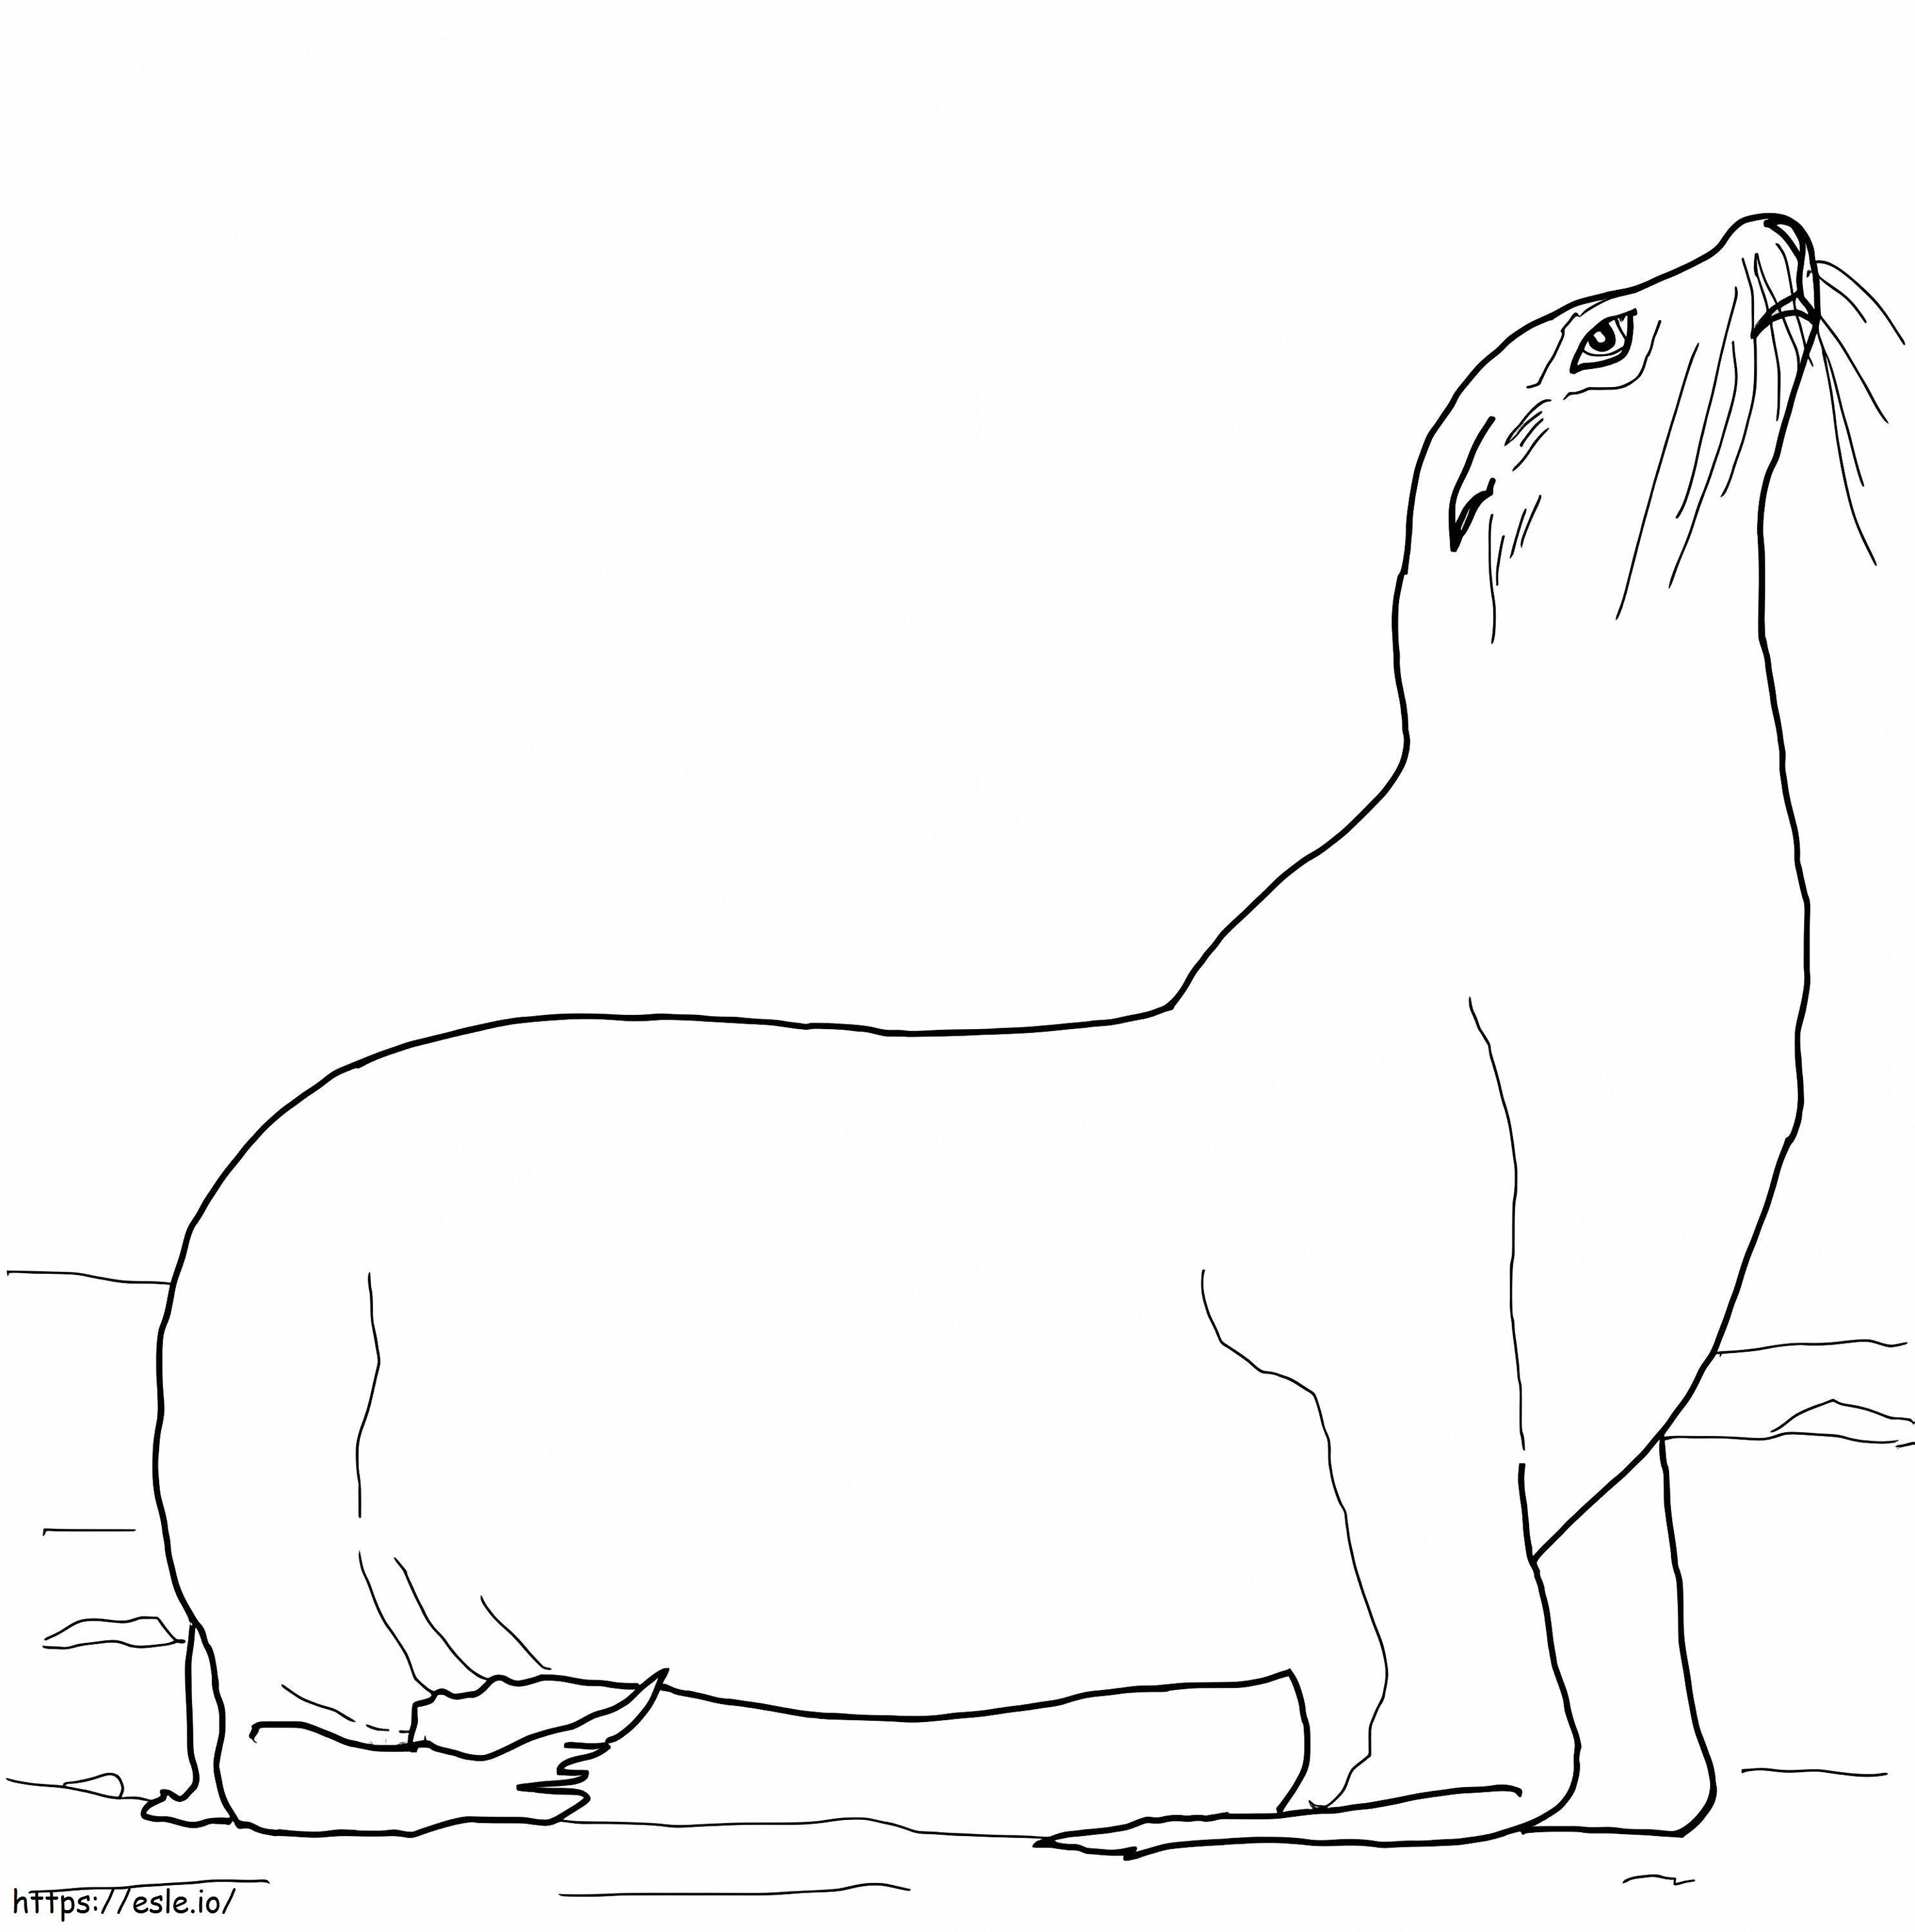 León marino de California 1 para colorear